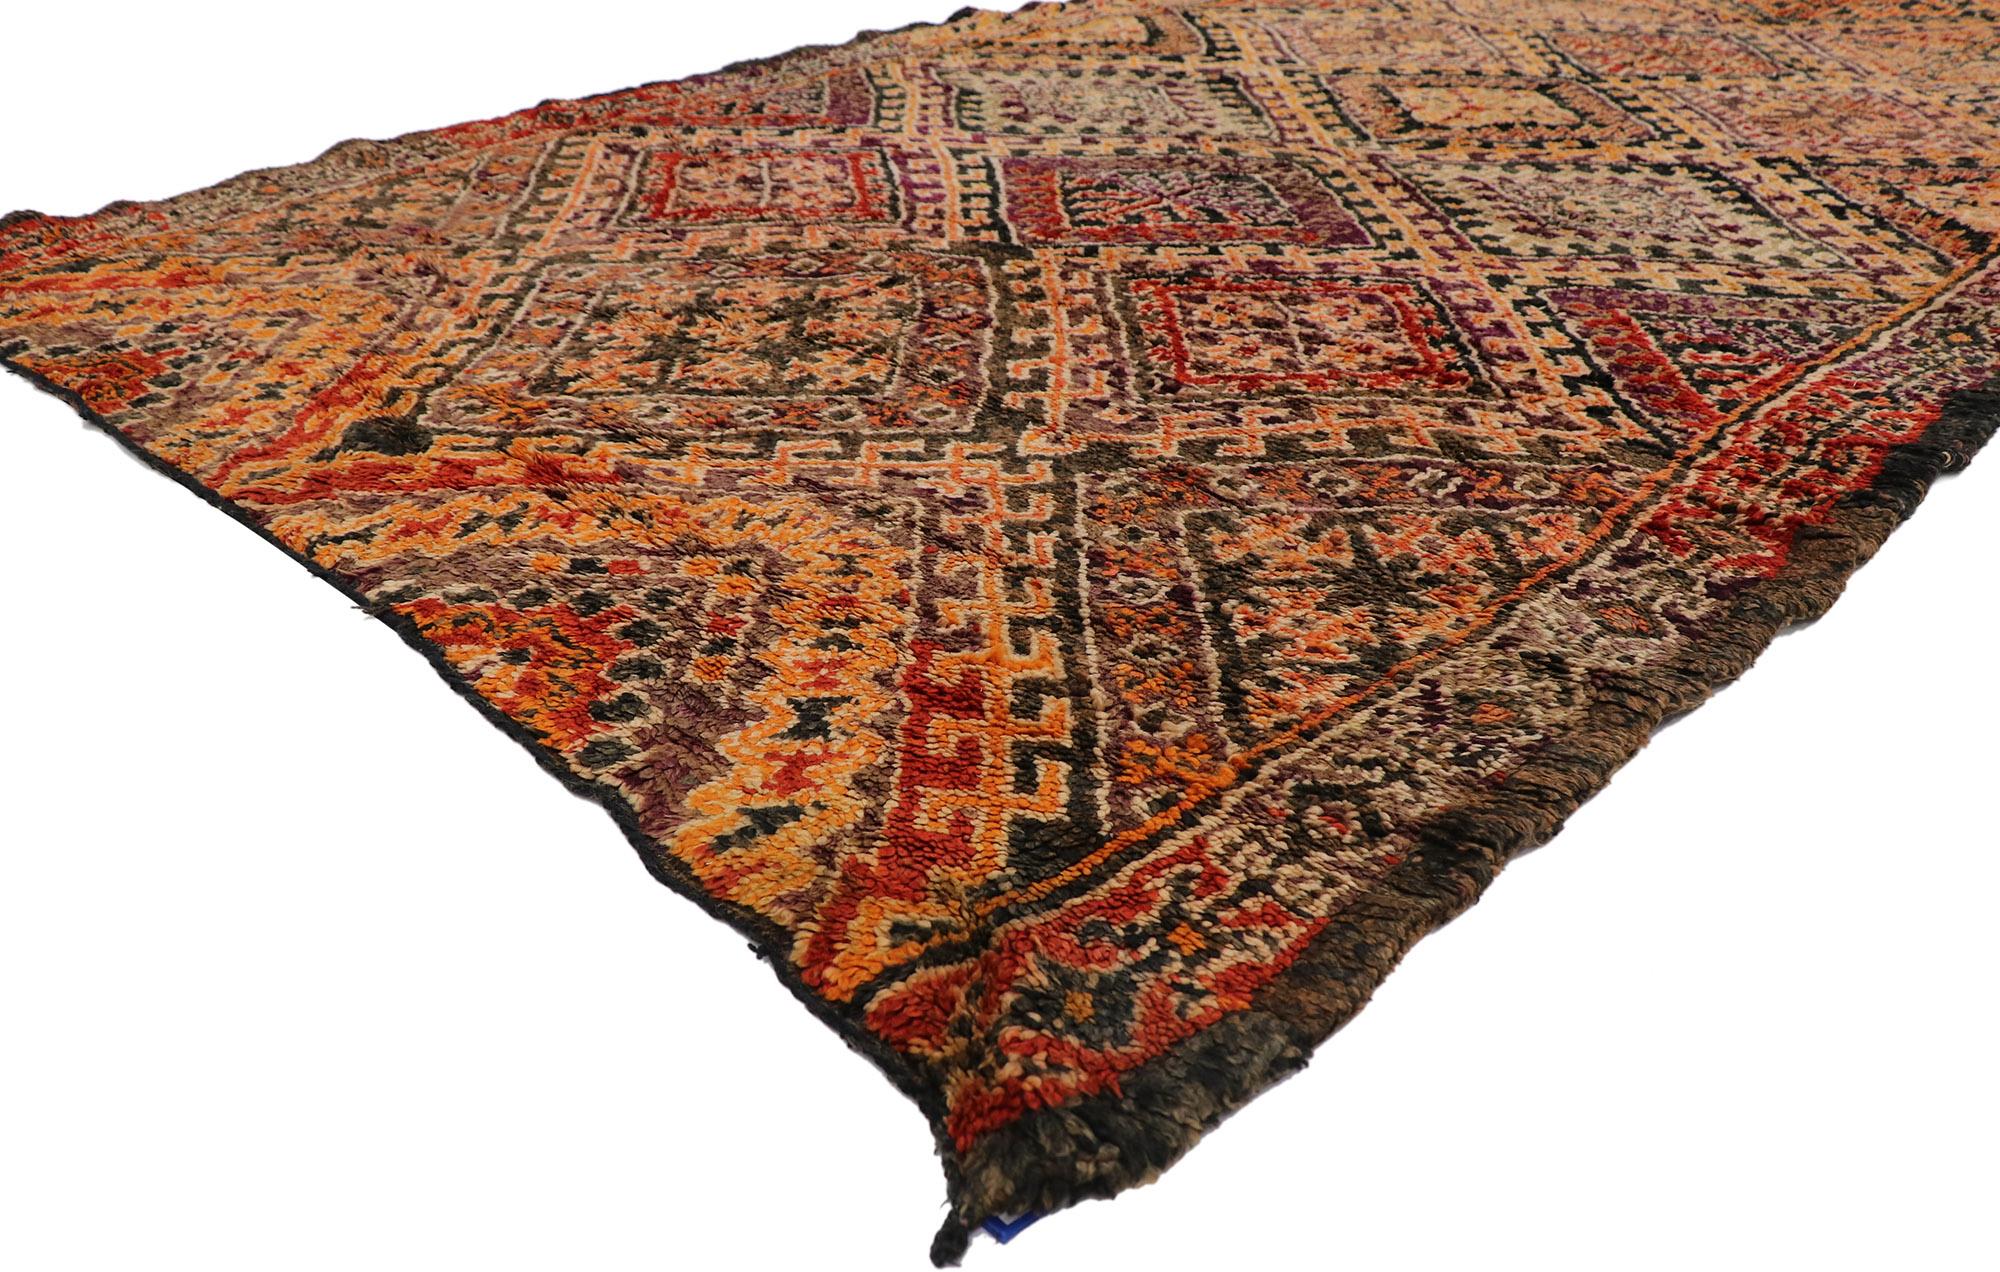 21287 Vintage Berber Beni M'Guild Marokko Teppich mit Mid-Century Modern Stil 06'08 x 12'07. Dieser handgeknüpfte marokkanische Berberteppich Beni M'Guild aus Wolle mit seinem kühnen, ausdrucksstarken Design, seinen unglaublichen Details und seiner